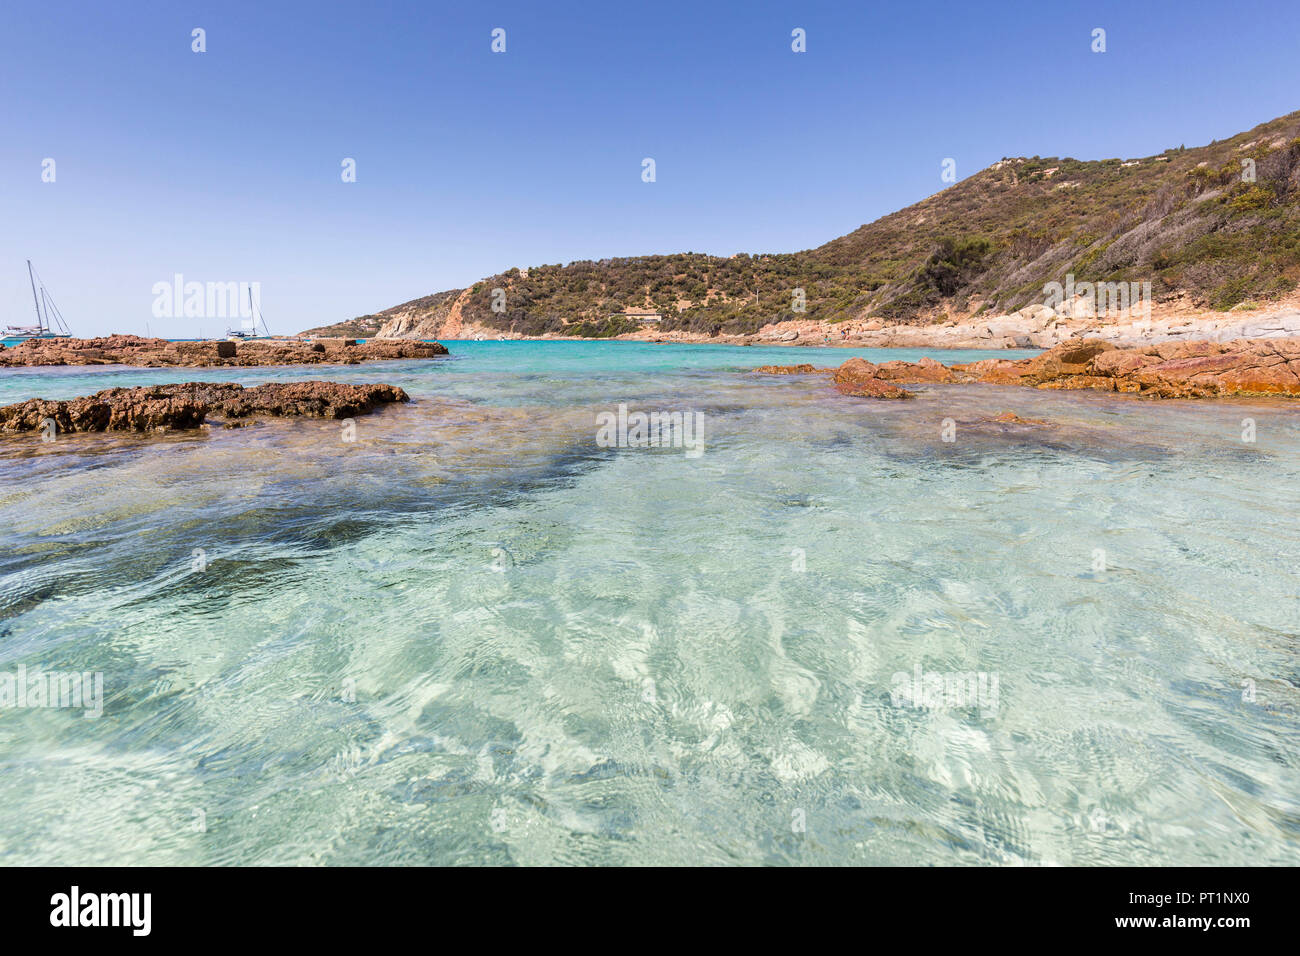 L'eau claire de la plage de Menasina (plage de Menasina), Cargèse, Corse, France Banque D'Images